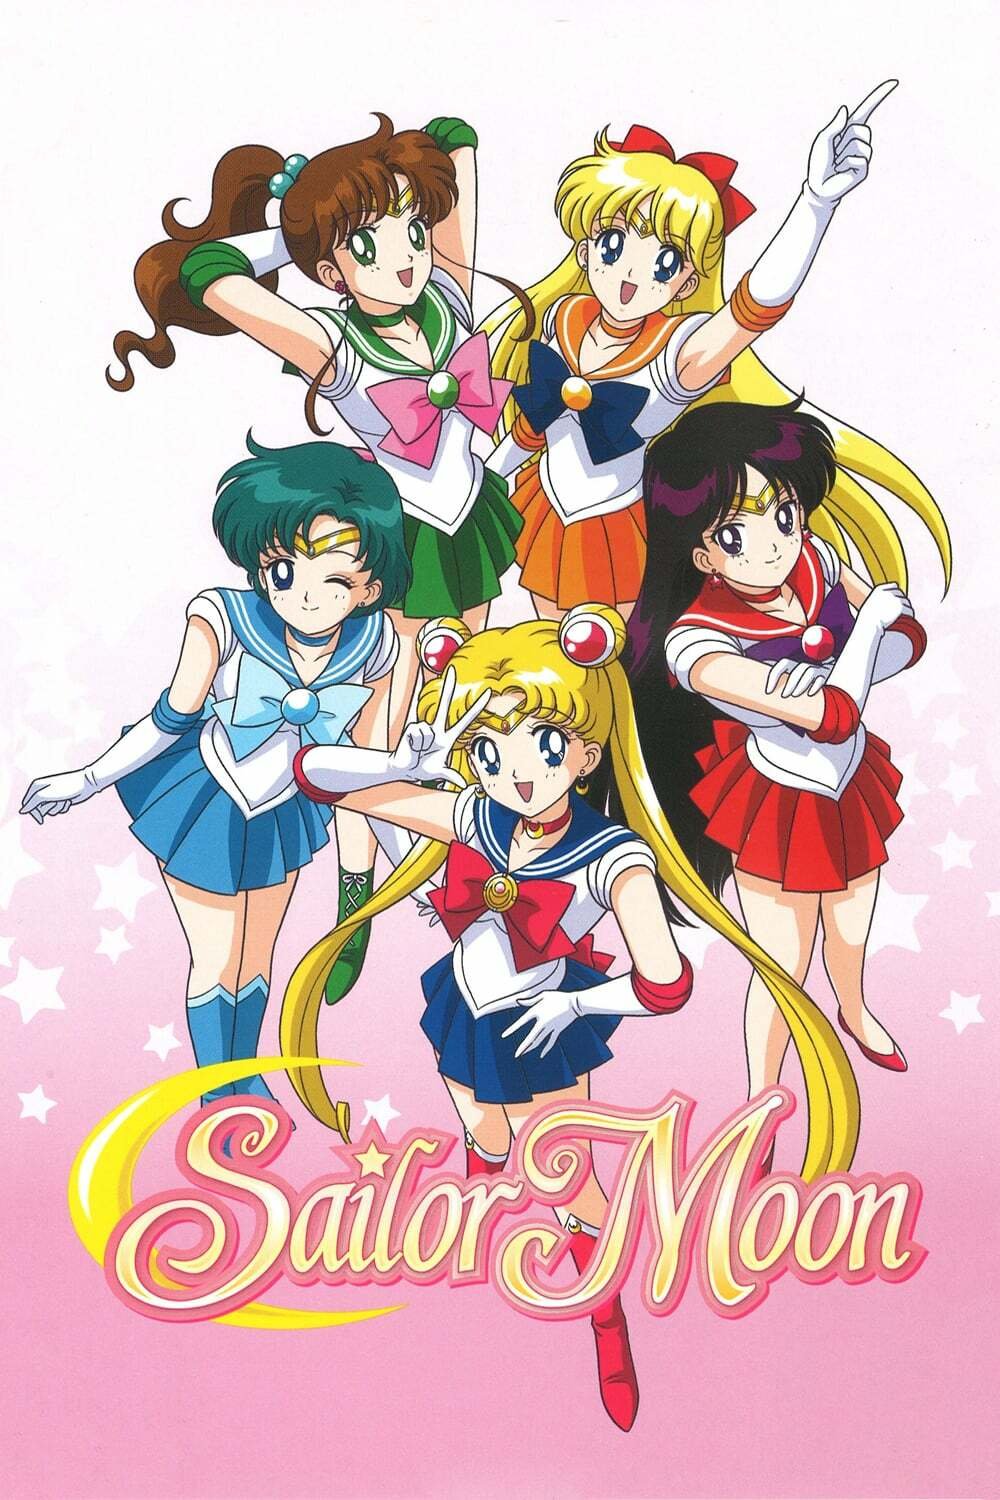 Obrázek bojovníků v historickém anime Sailor Moon